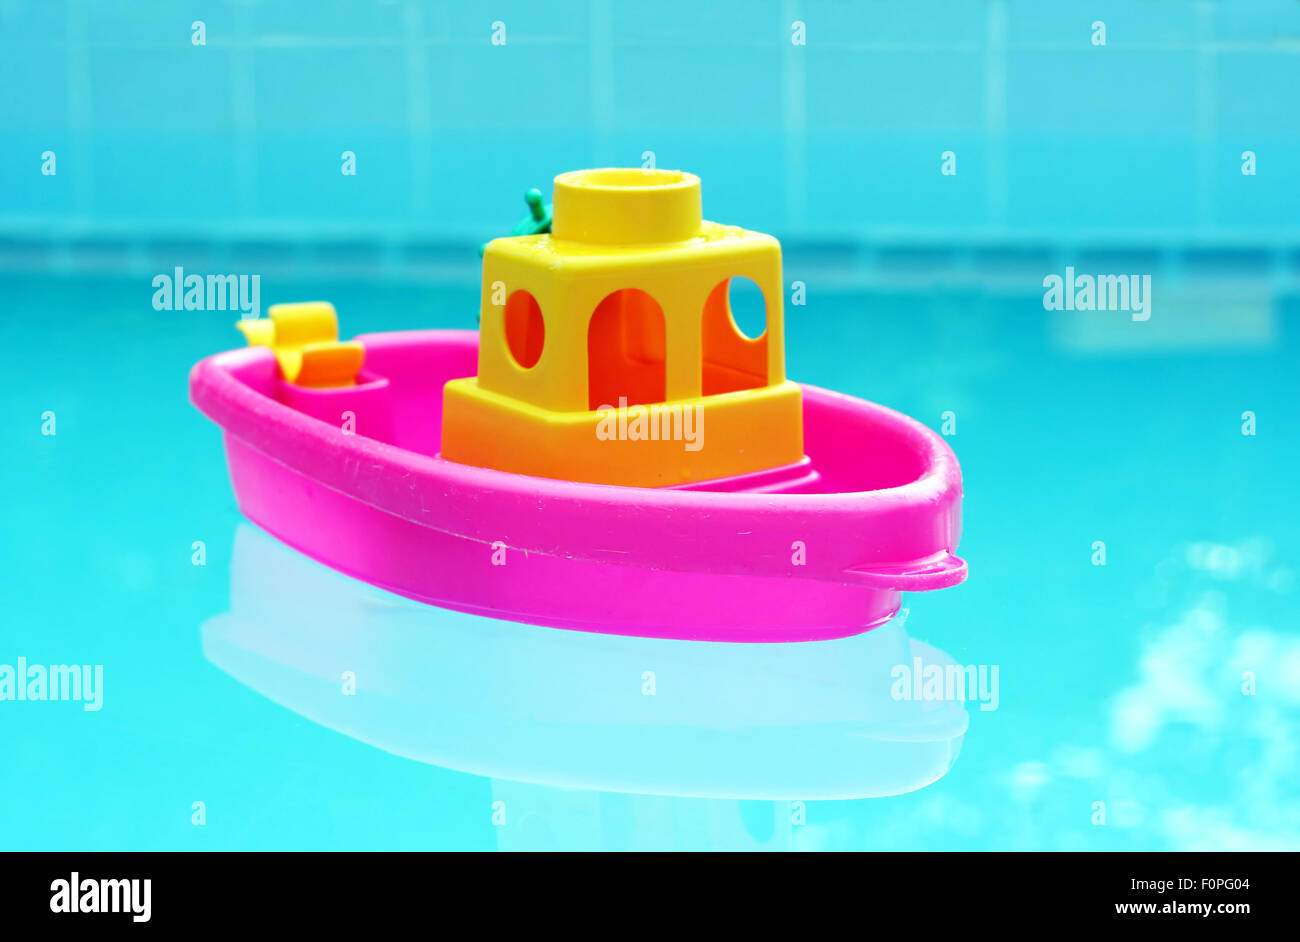 Juguete pequeño bote de plástico flotando en una piscina Foto de stock